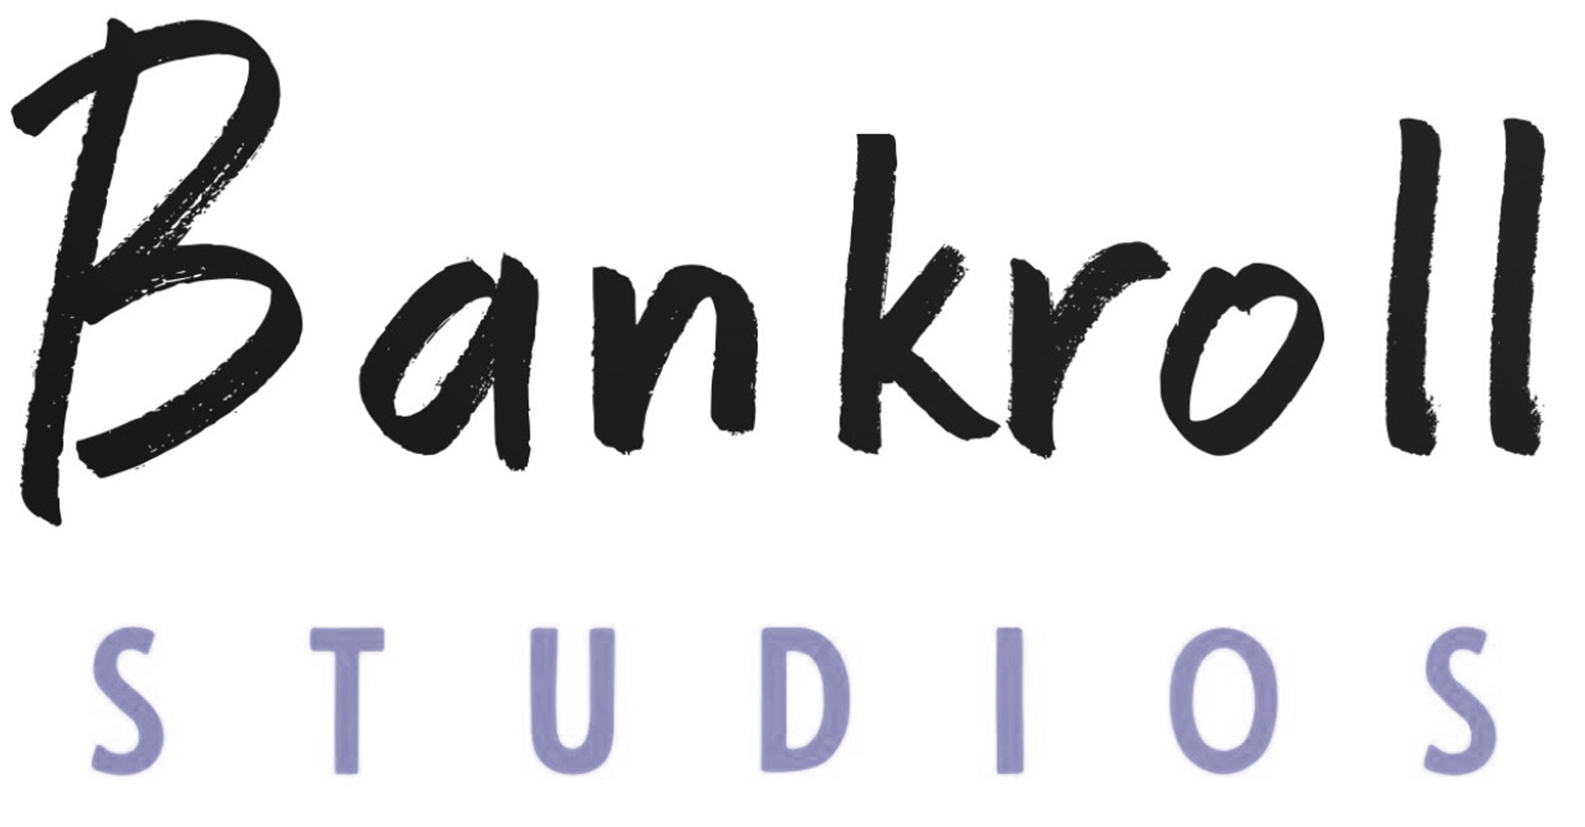 Bankroll Studios